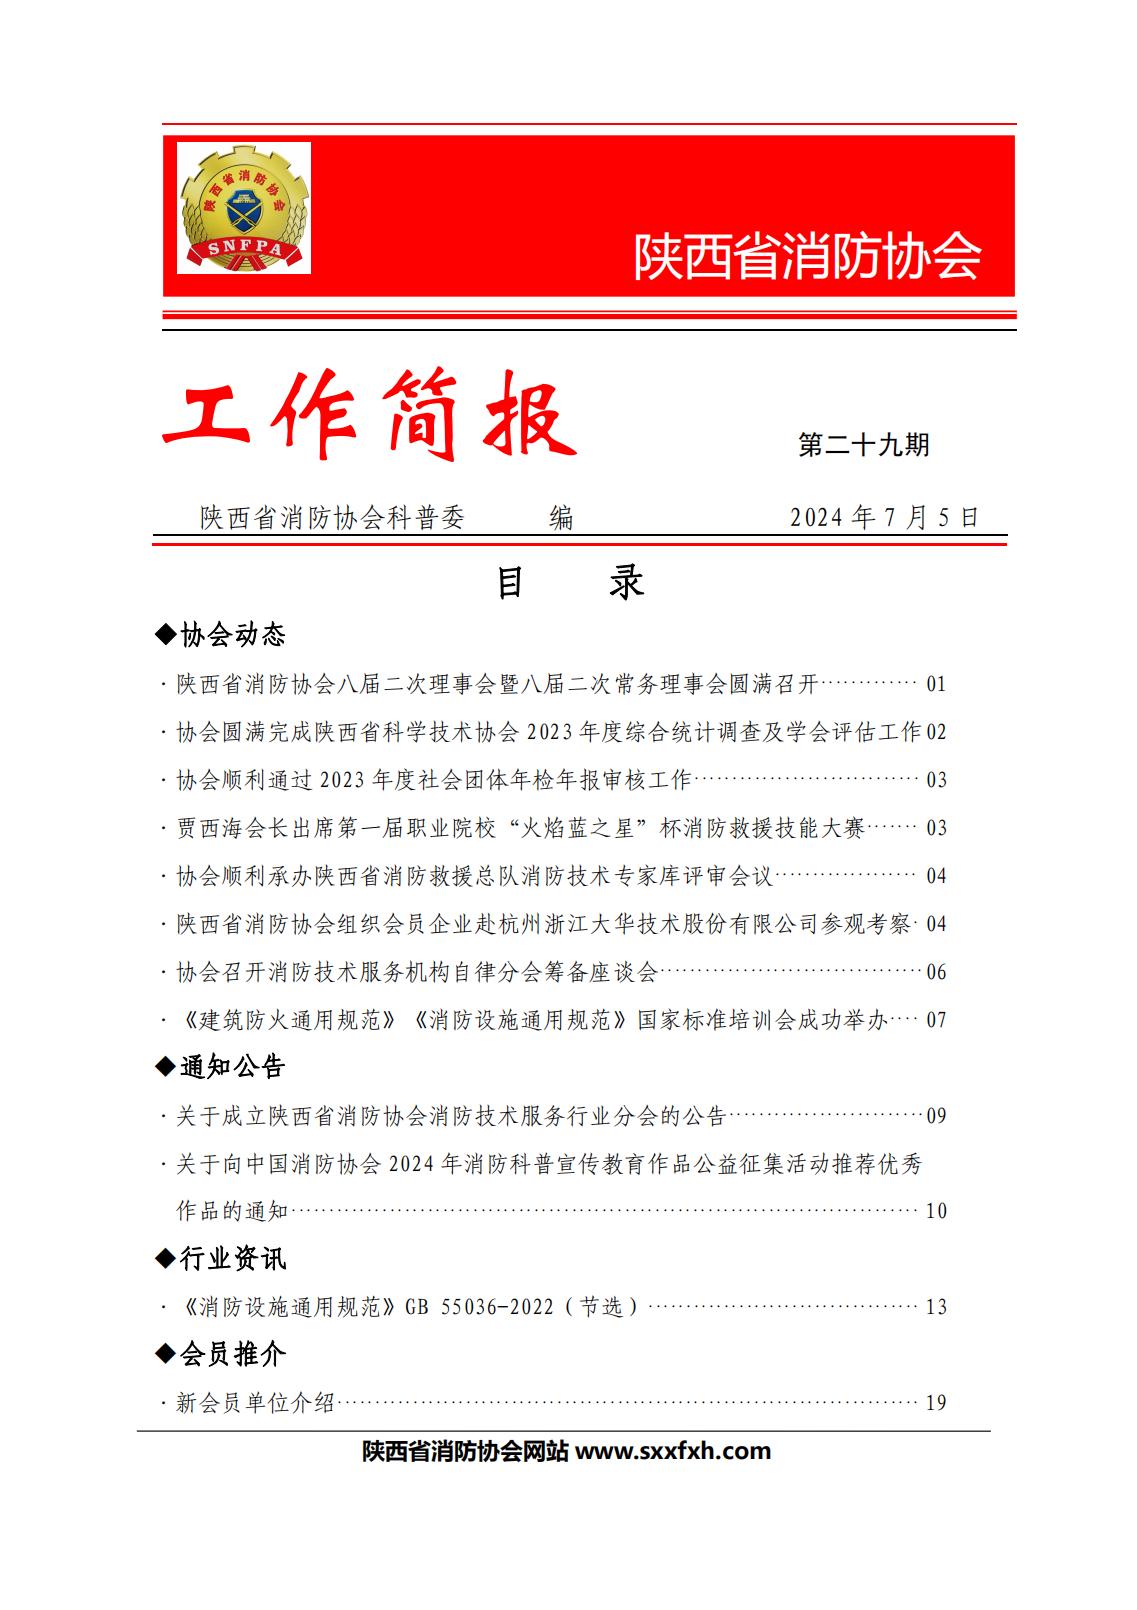 陕西省消防协会第二十九期工作简报